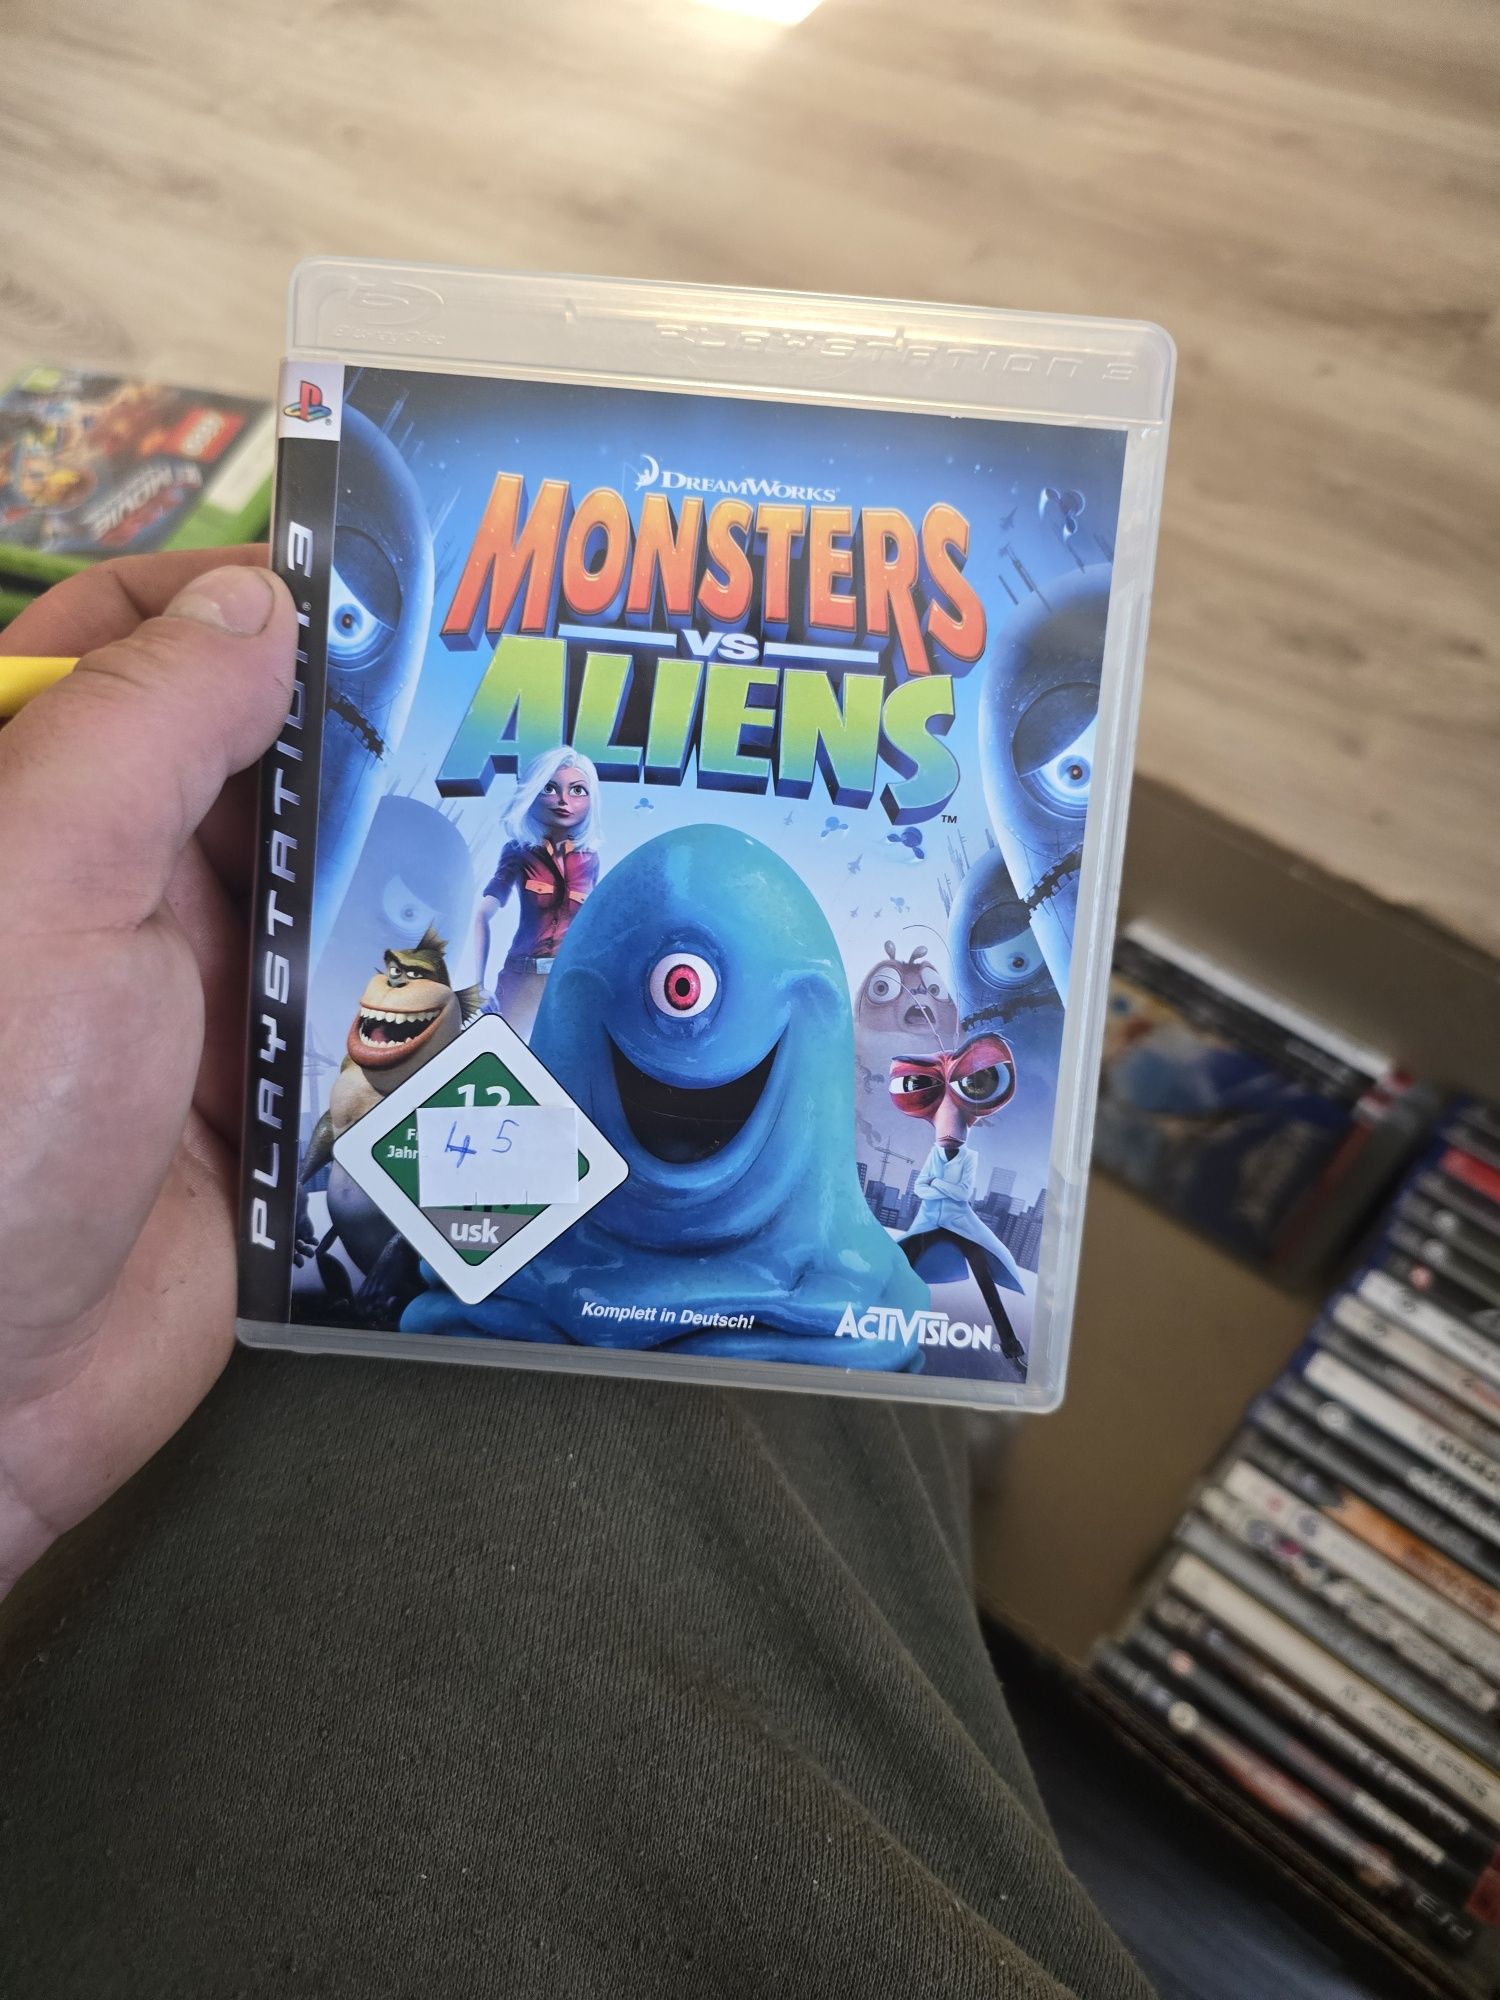 Monster vs aliens ps3